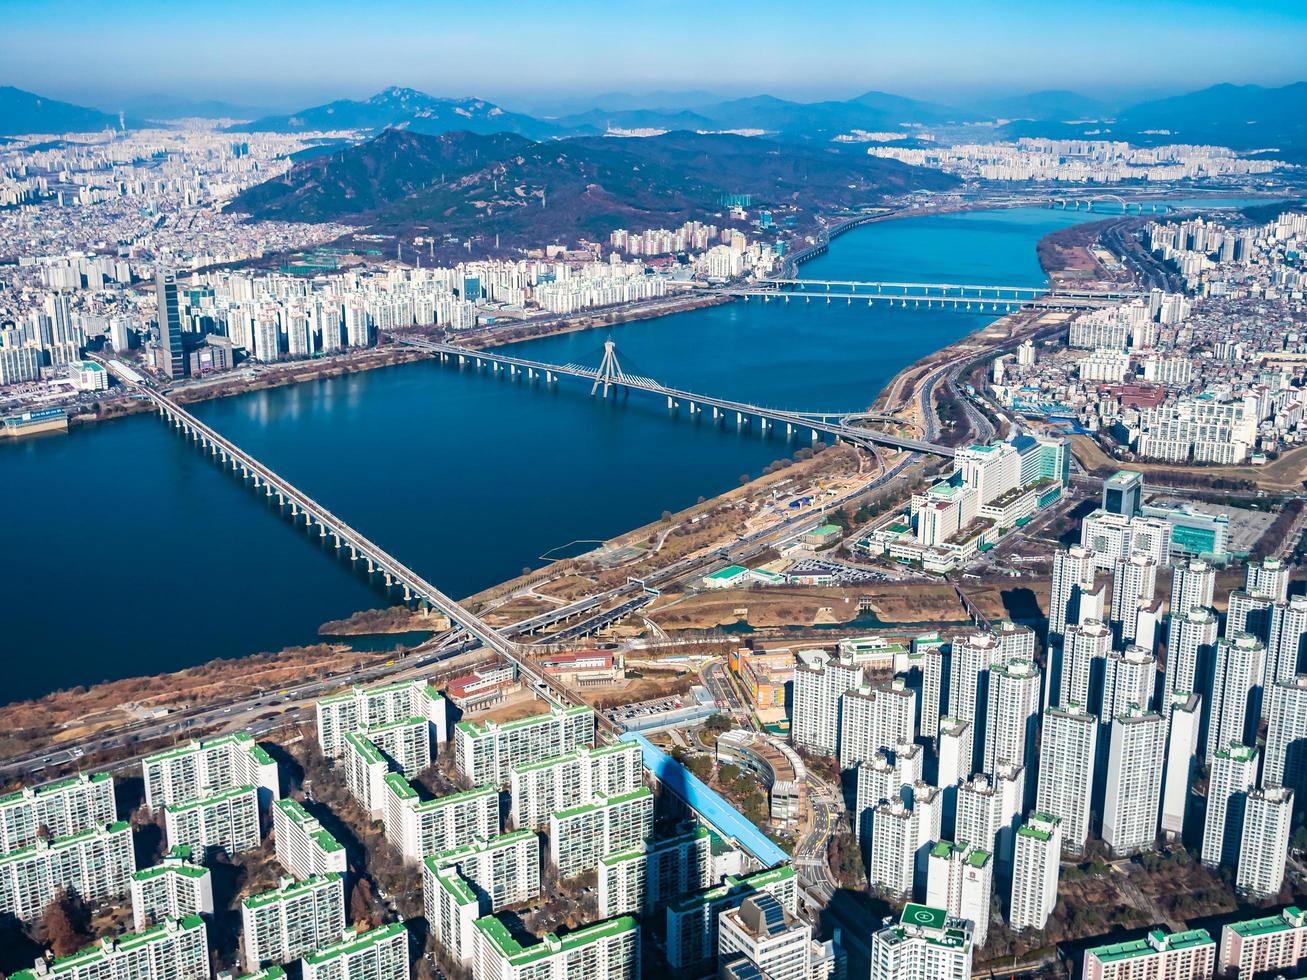 Luftaufnahme der Stadt Seoul, Südkorea foto